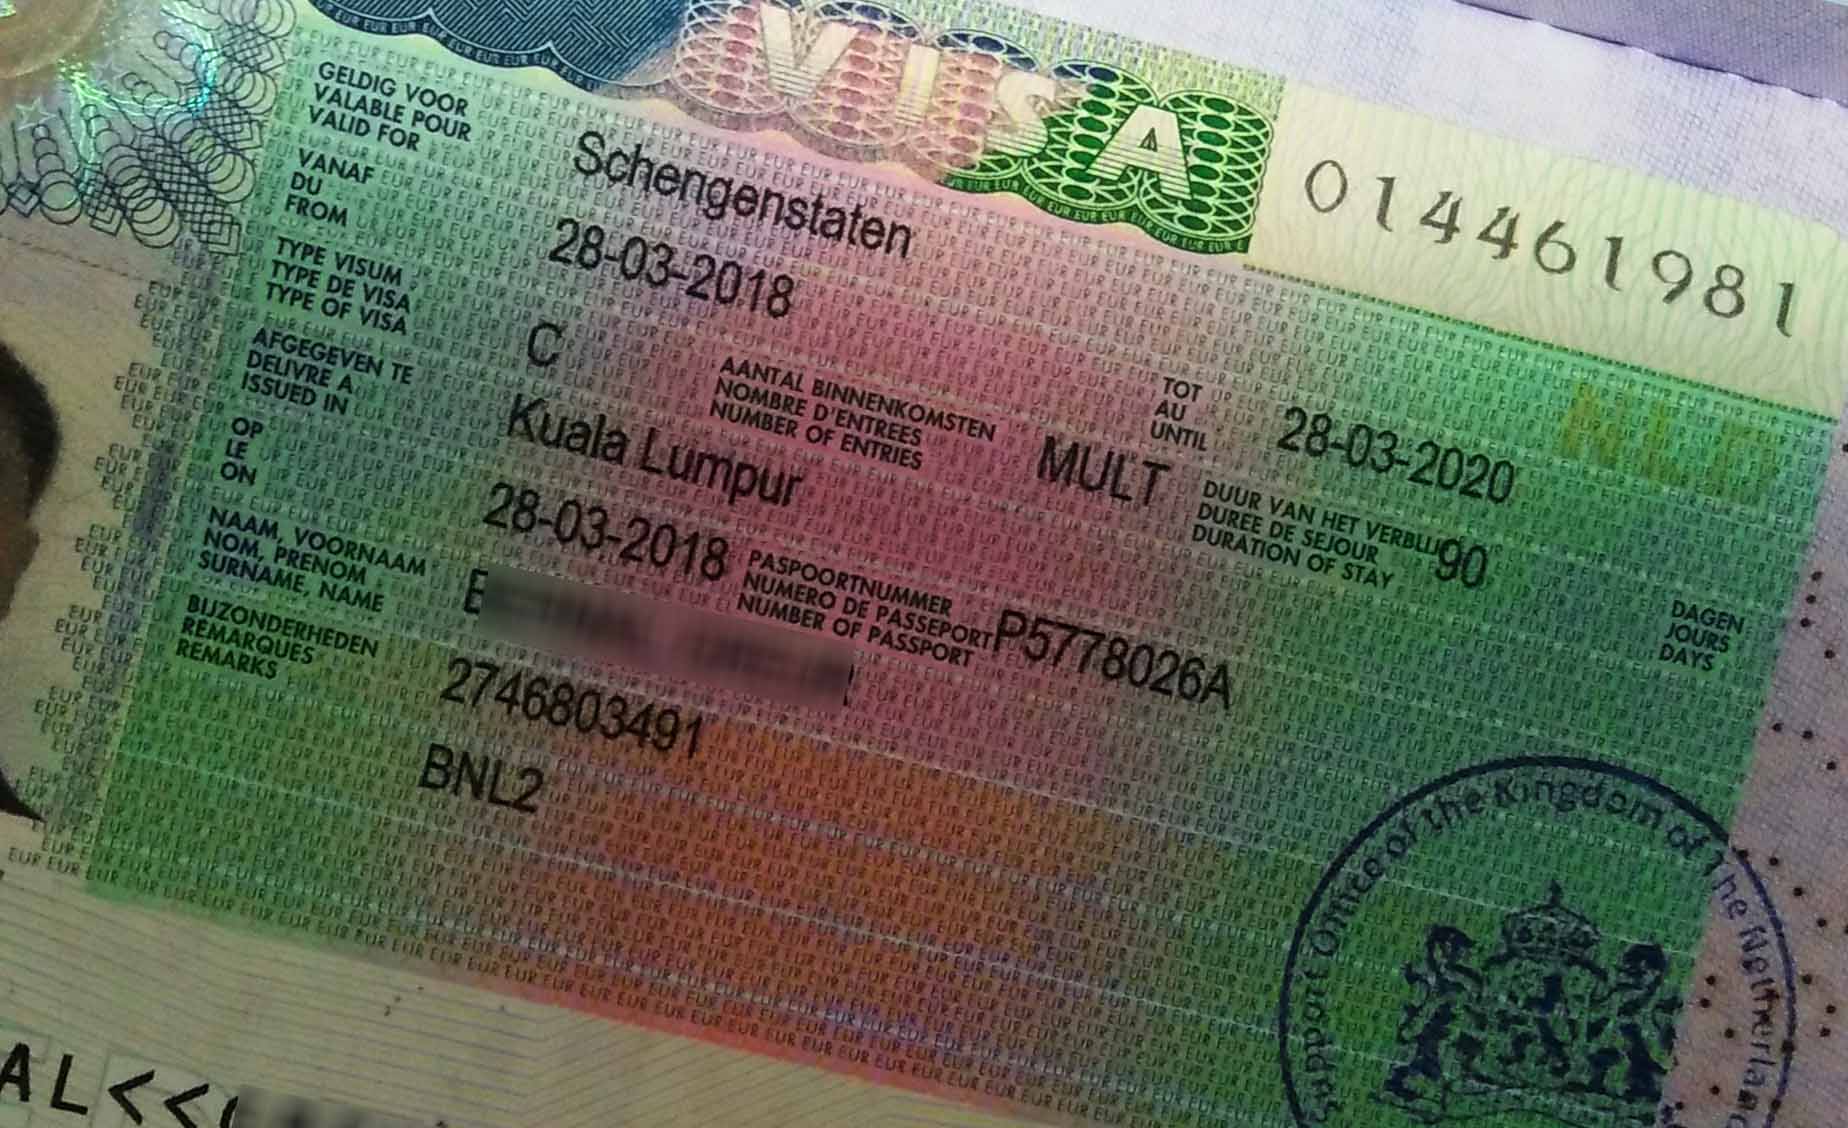 A Schengen Visa attached to a passport.